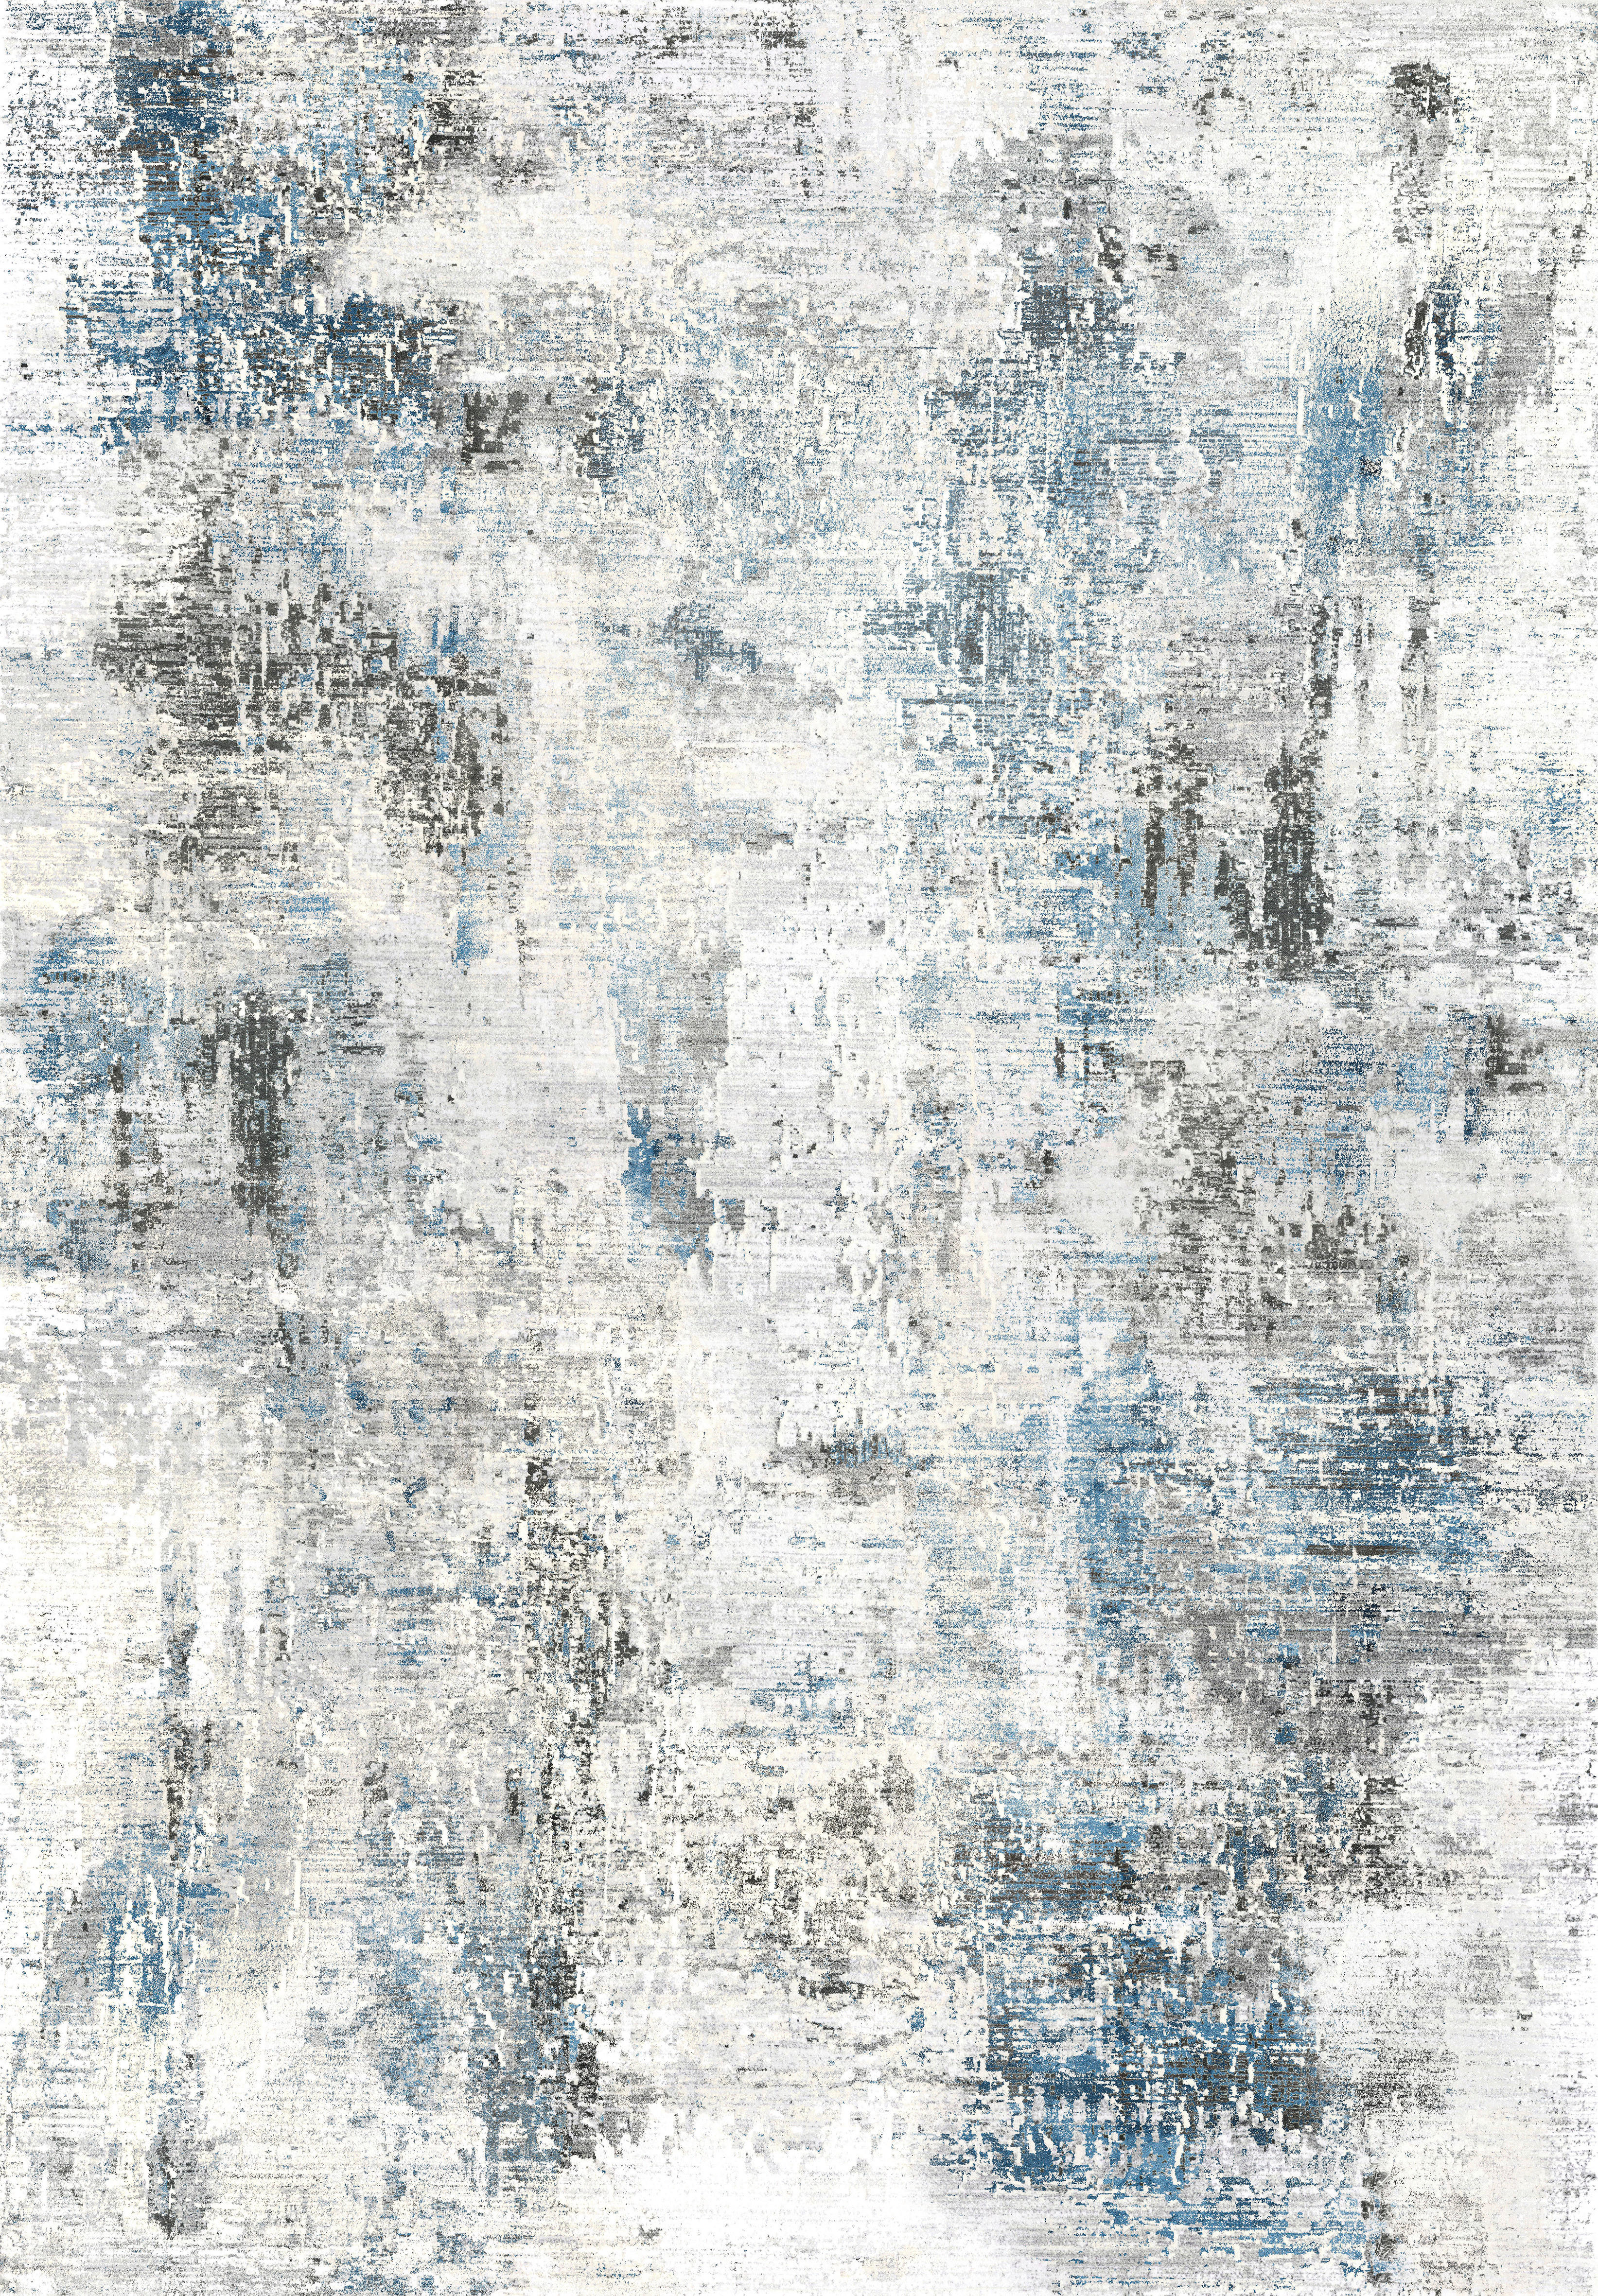 Novel VINTAGE KOBEREC, 120/180 cm, modrá, šedá - modrá,šedá - textil